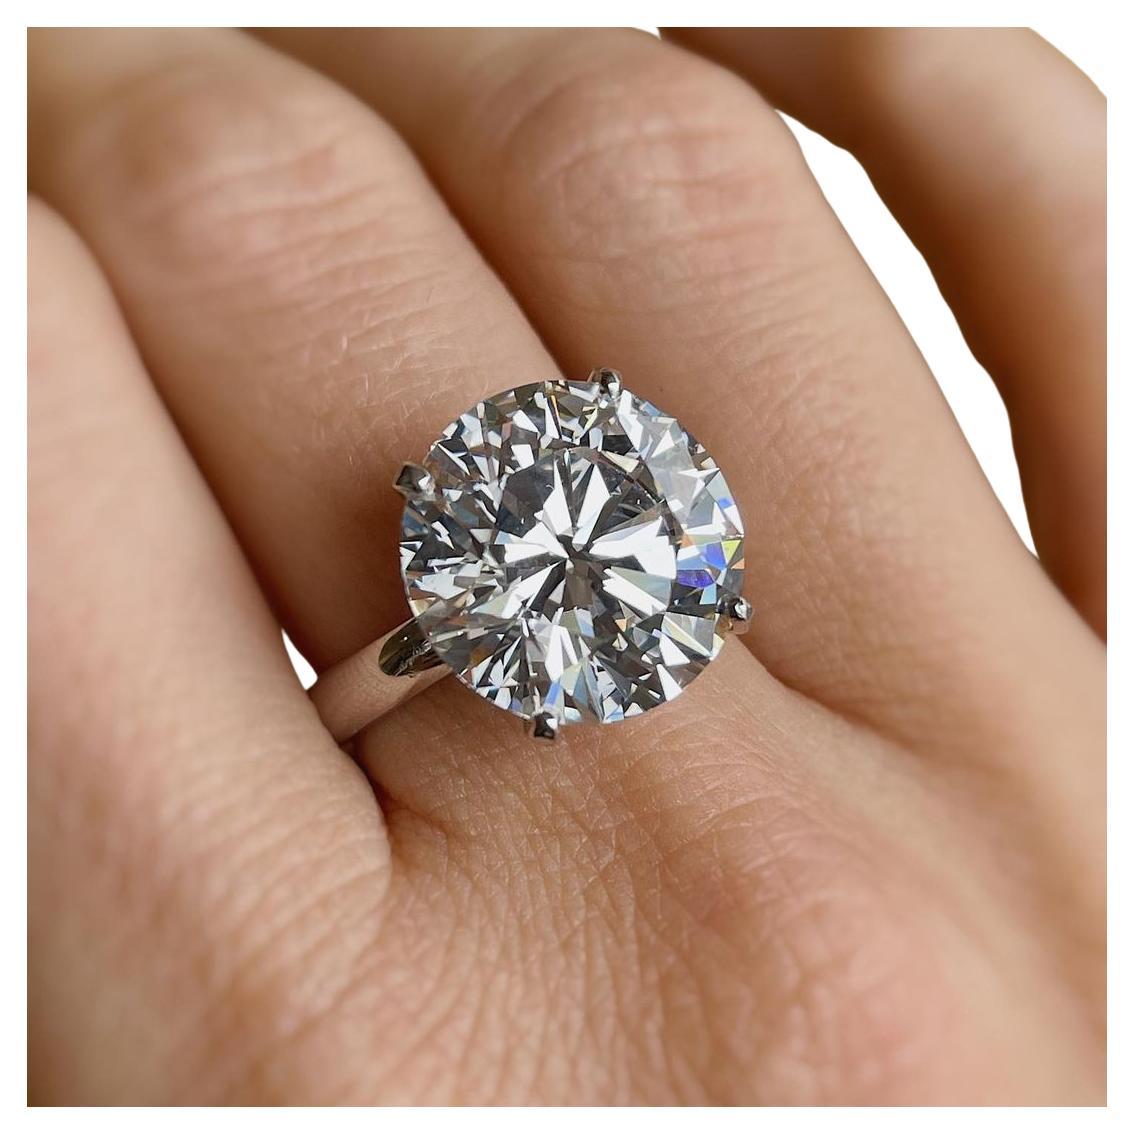 Cette bague en diamant unique est fièrement offerte par Antinori Fine Jewels.

Ce diamant de 7,53 carats, certifié par le GIA, de couleur H et de pureté interne irréprochable, est serti dans une bague en platine et diamant fabriquée à la main par